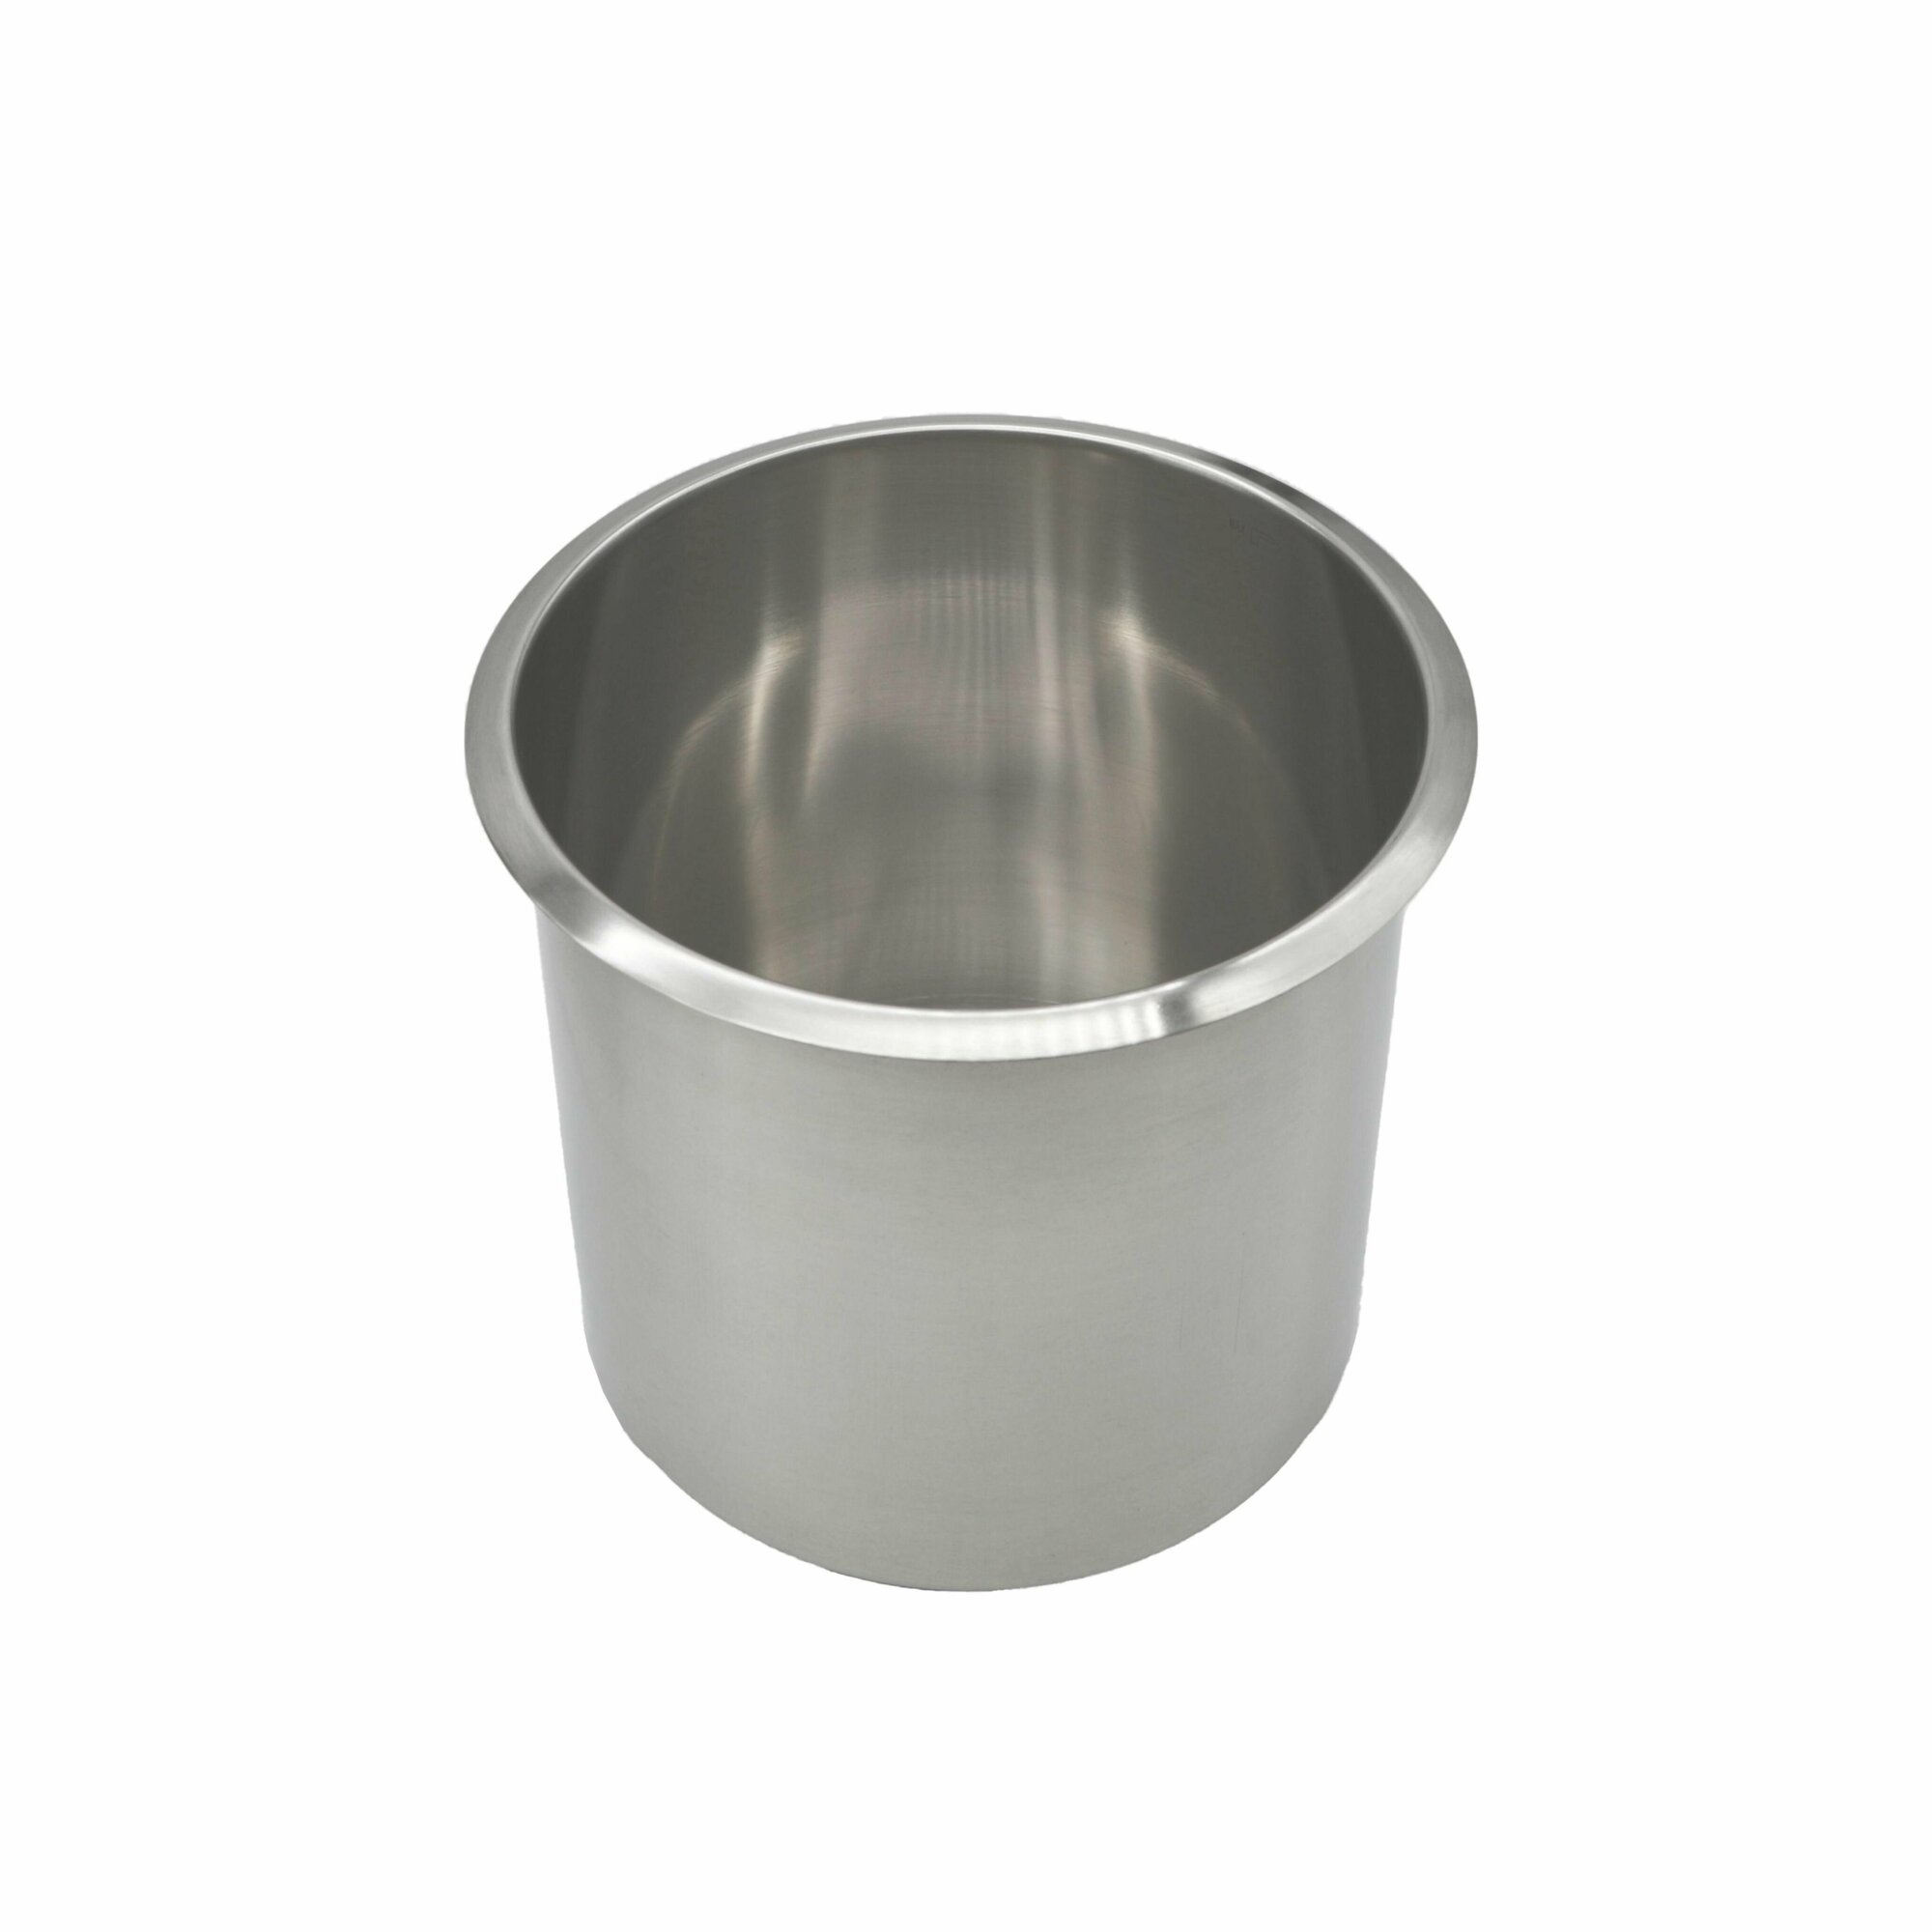 Мармит горшочек для супа AIRHOT SB-5700, 5л, эмалированная сталь, терморегулятор